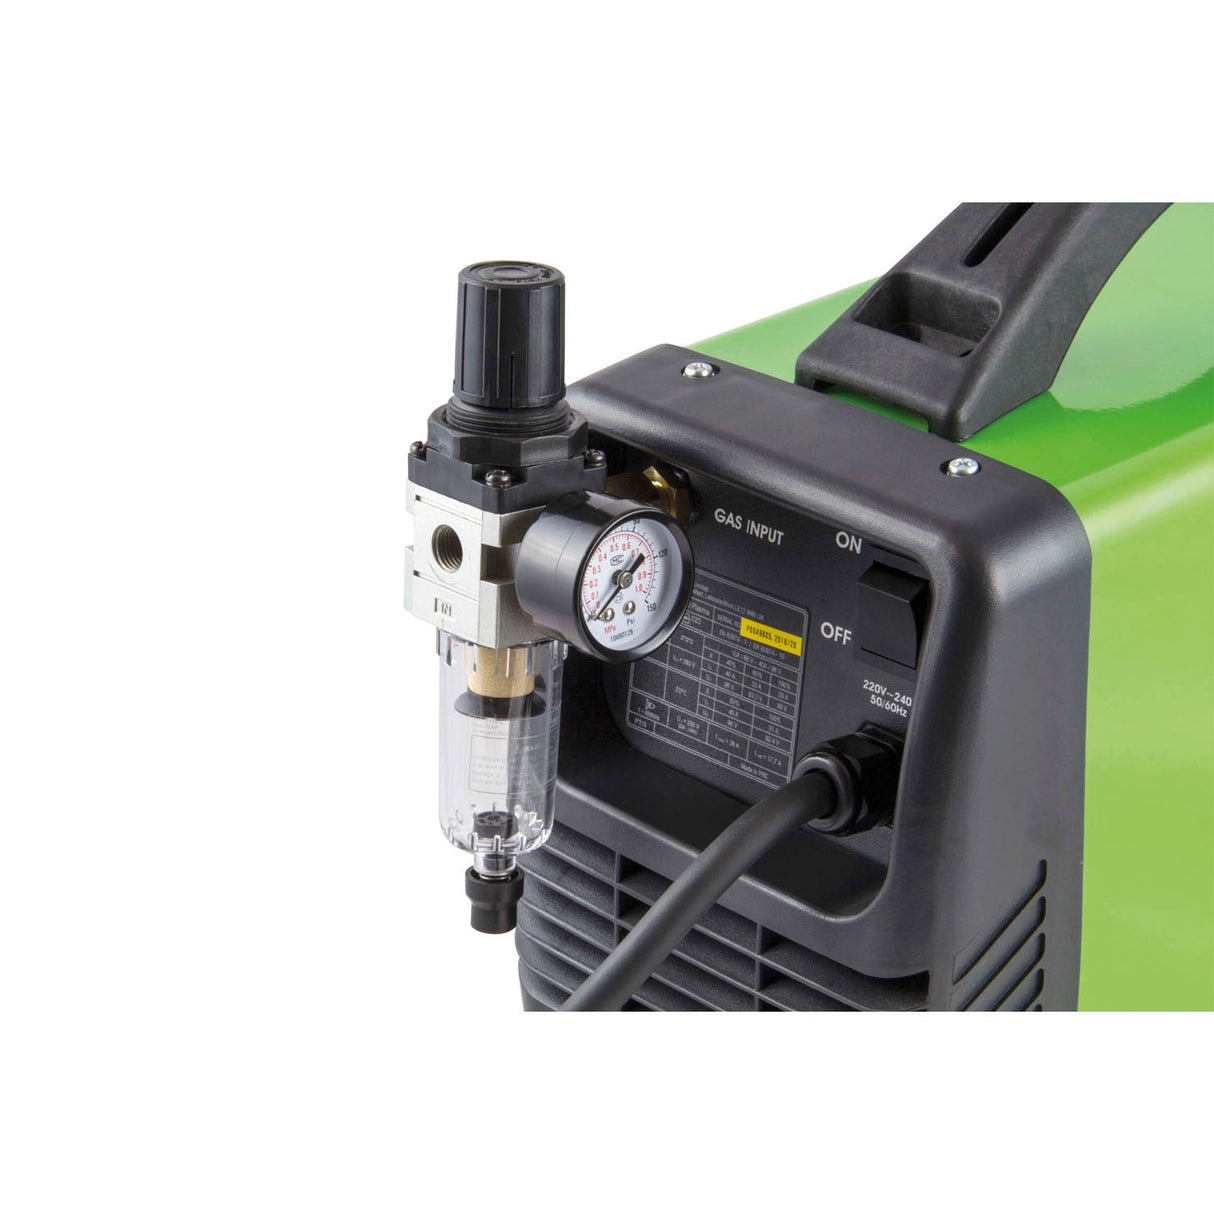 SIP - HG400 Inverter Plasma Cutter - SIP-05785 - Farming Parts